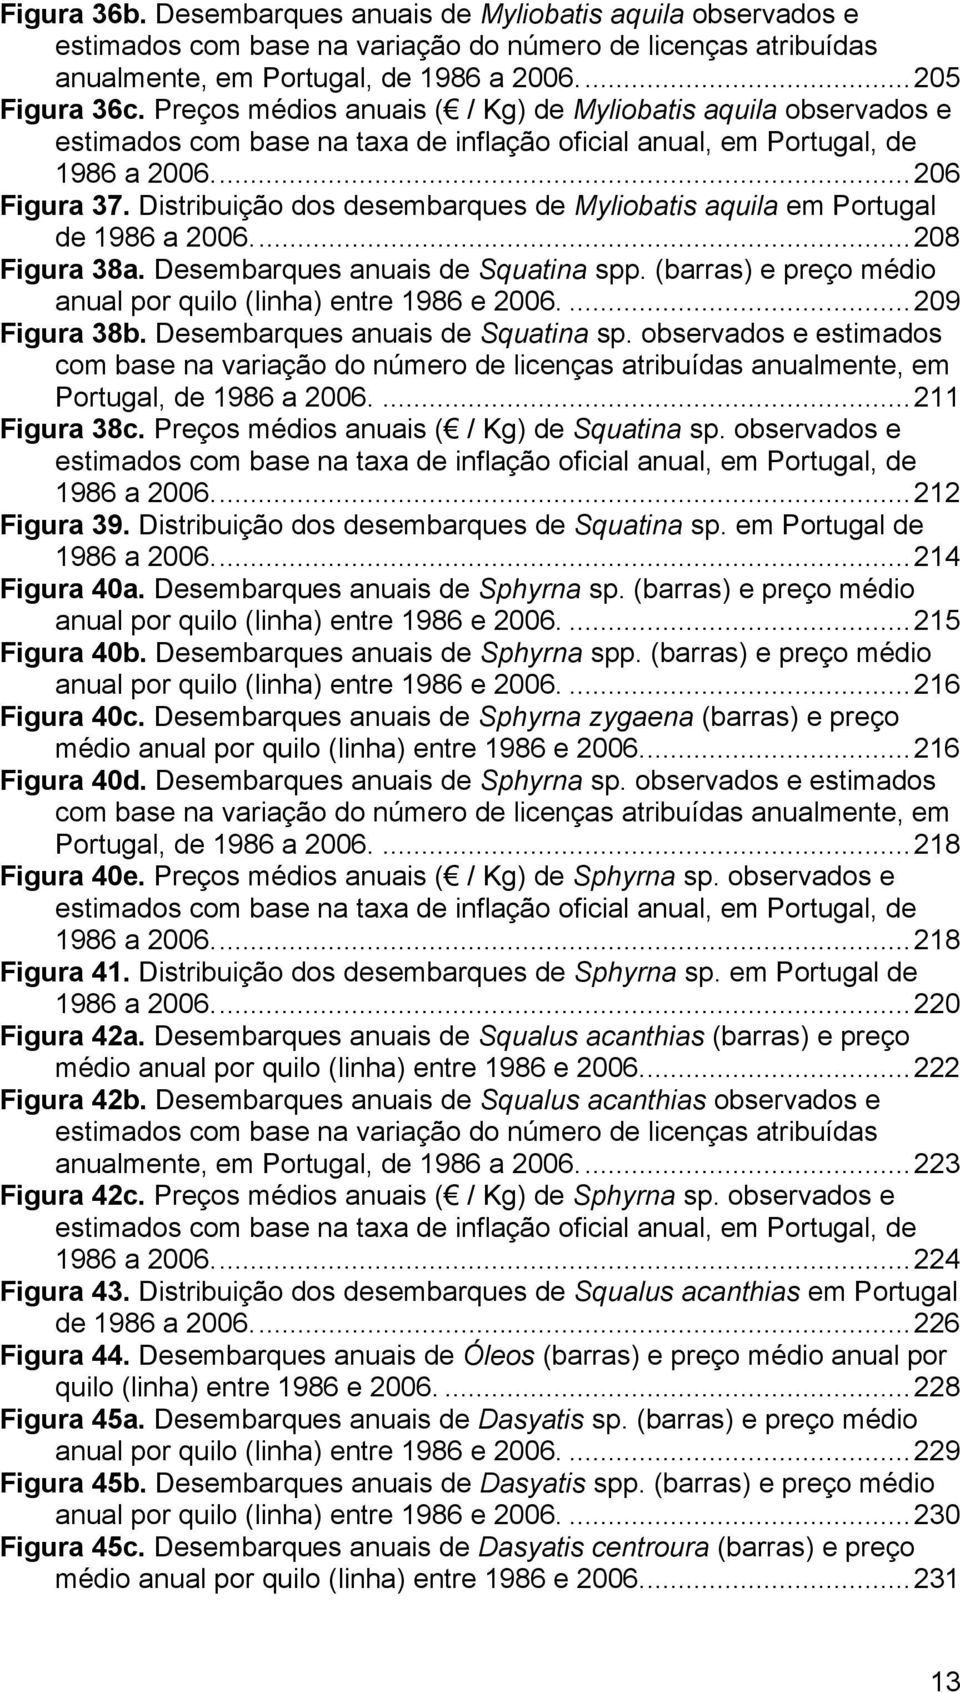 Distribuição dos desembarques de Myliobatis aquila em Portugal de 1986 a 2006...208 Figura 38a. Desembarques anuais de Squatina spp. (barras) e preço médio anual por quilo (linha) entre 1986 e 2006.